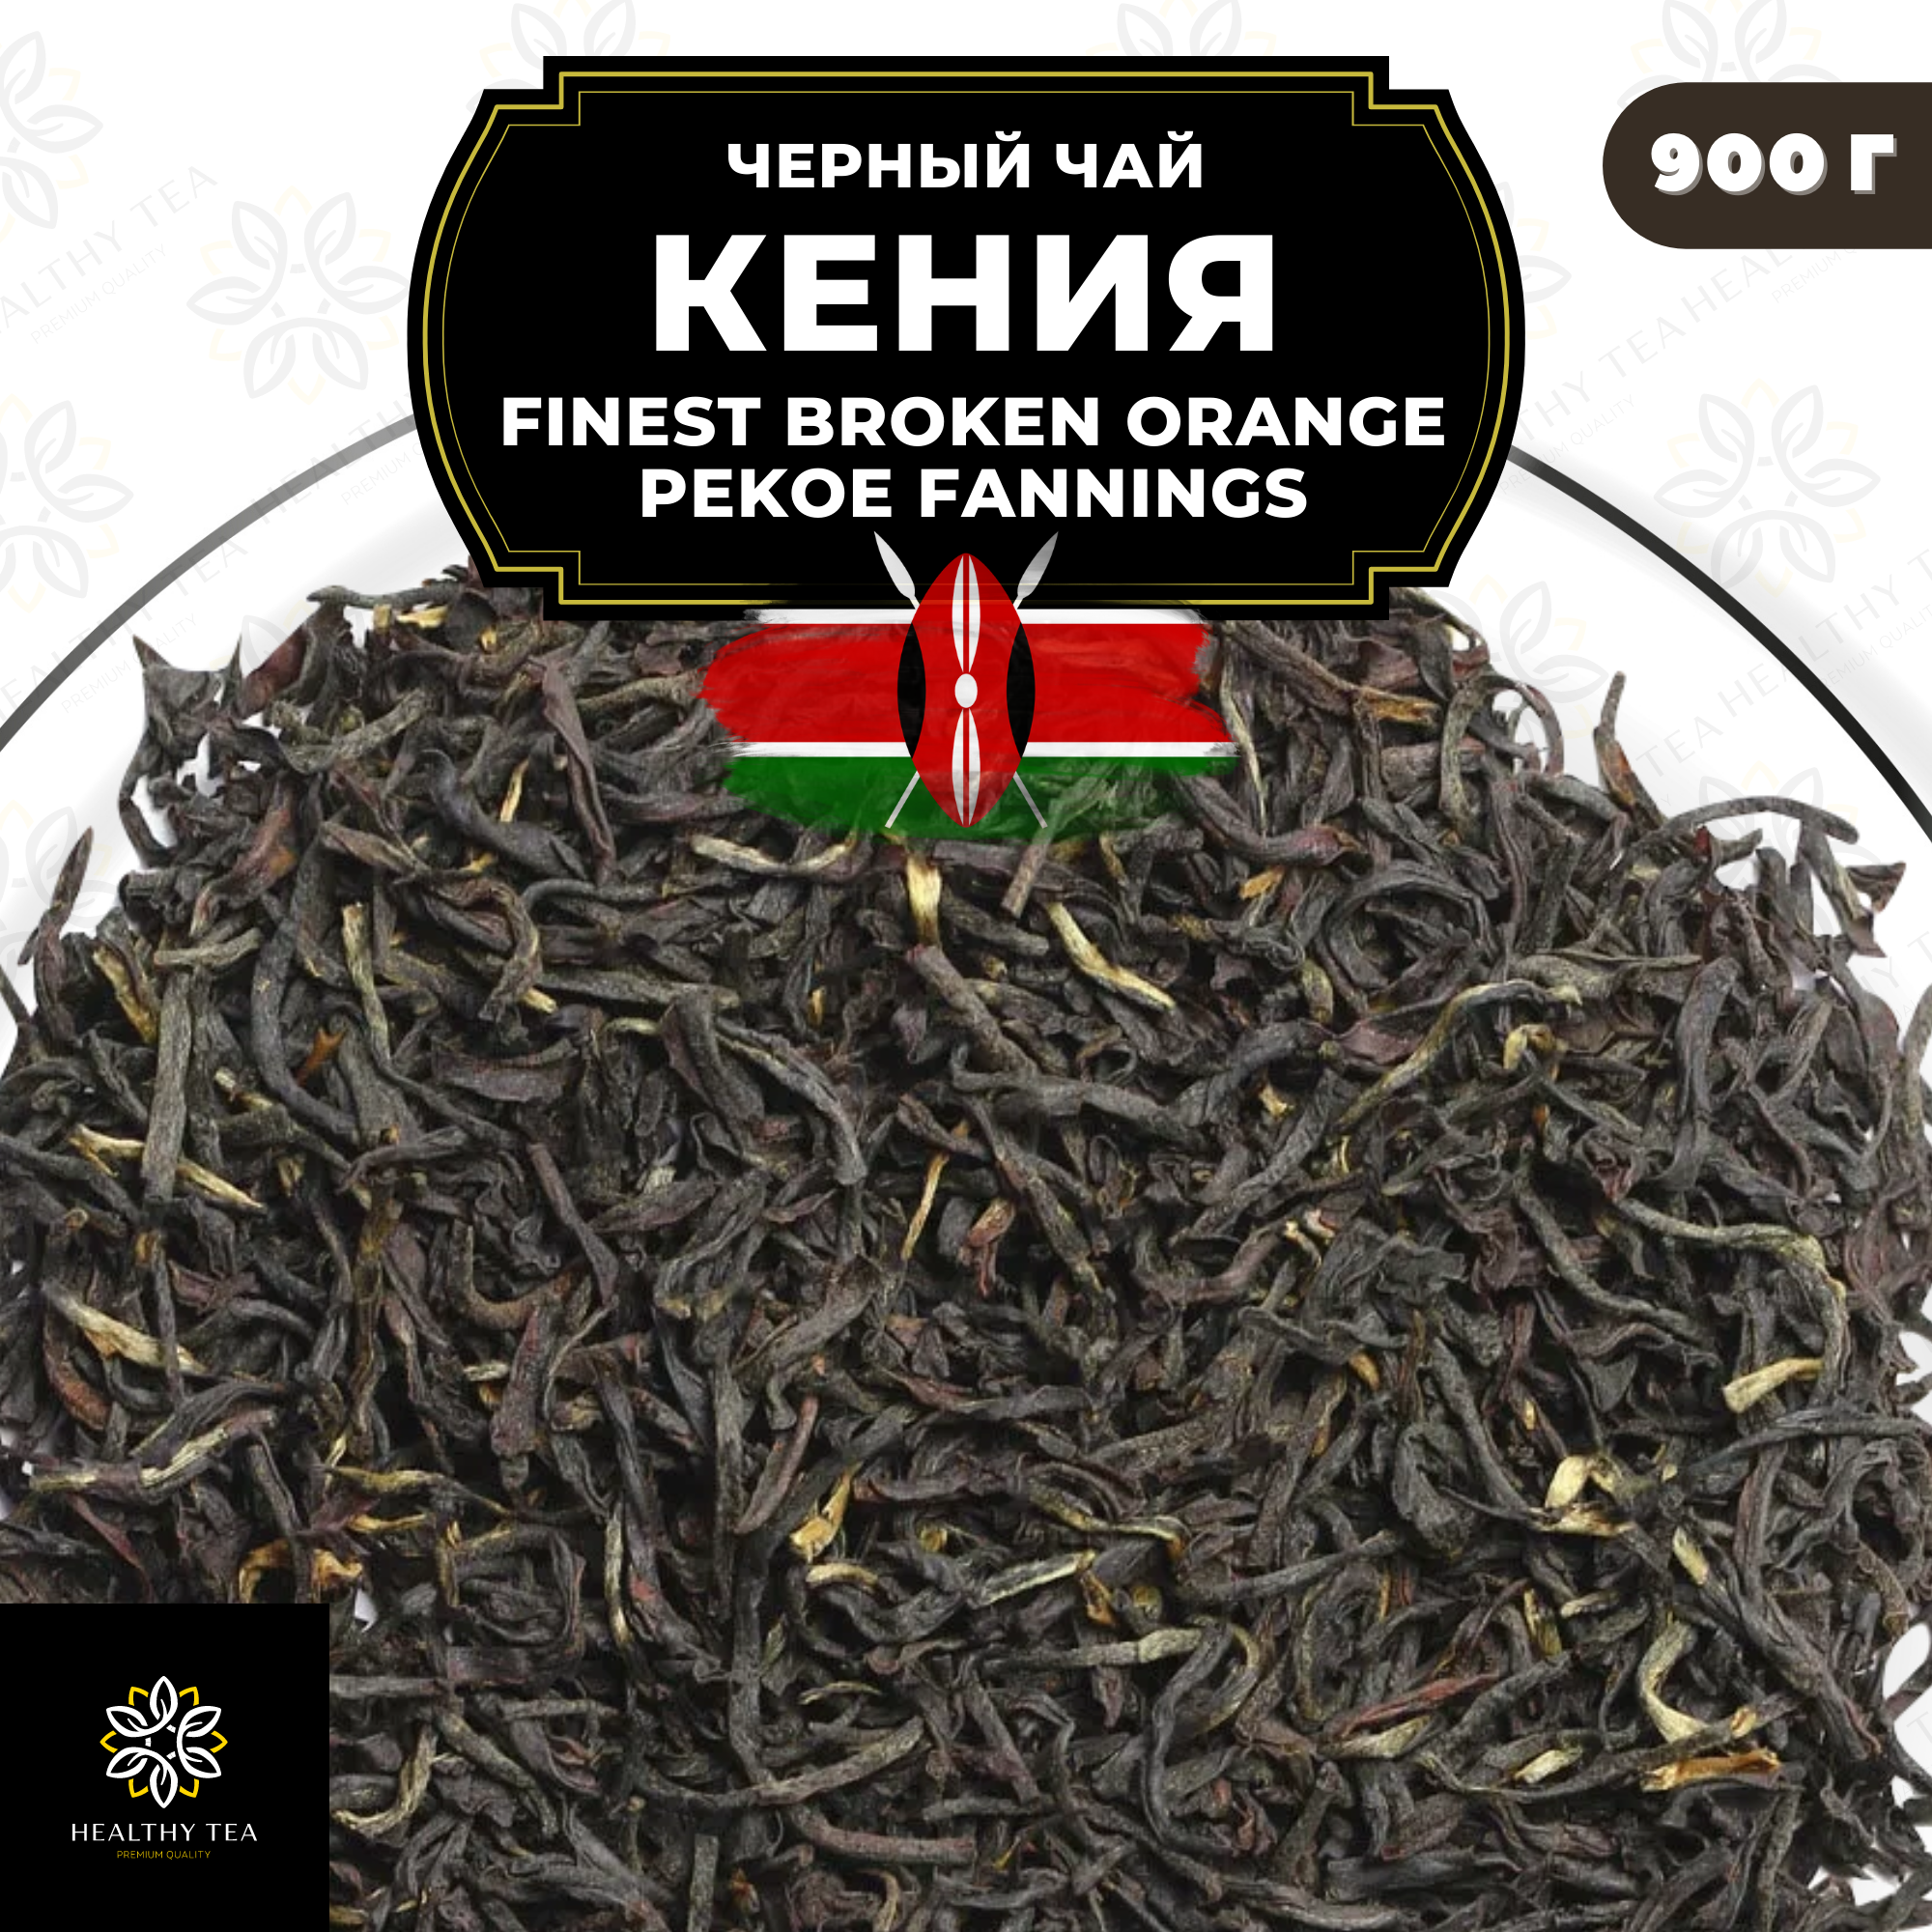 Кенийский Черный чай Кения (FBOPF среднелистовой с типсами) Полезный чай / HEALTHY TEA, 900 гр